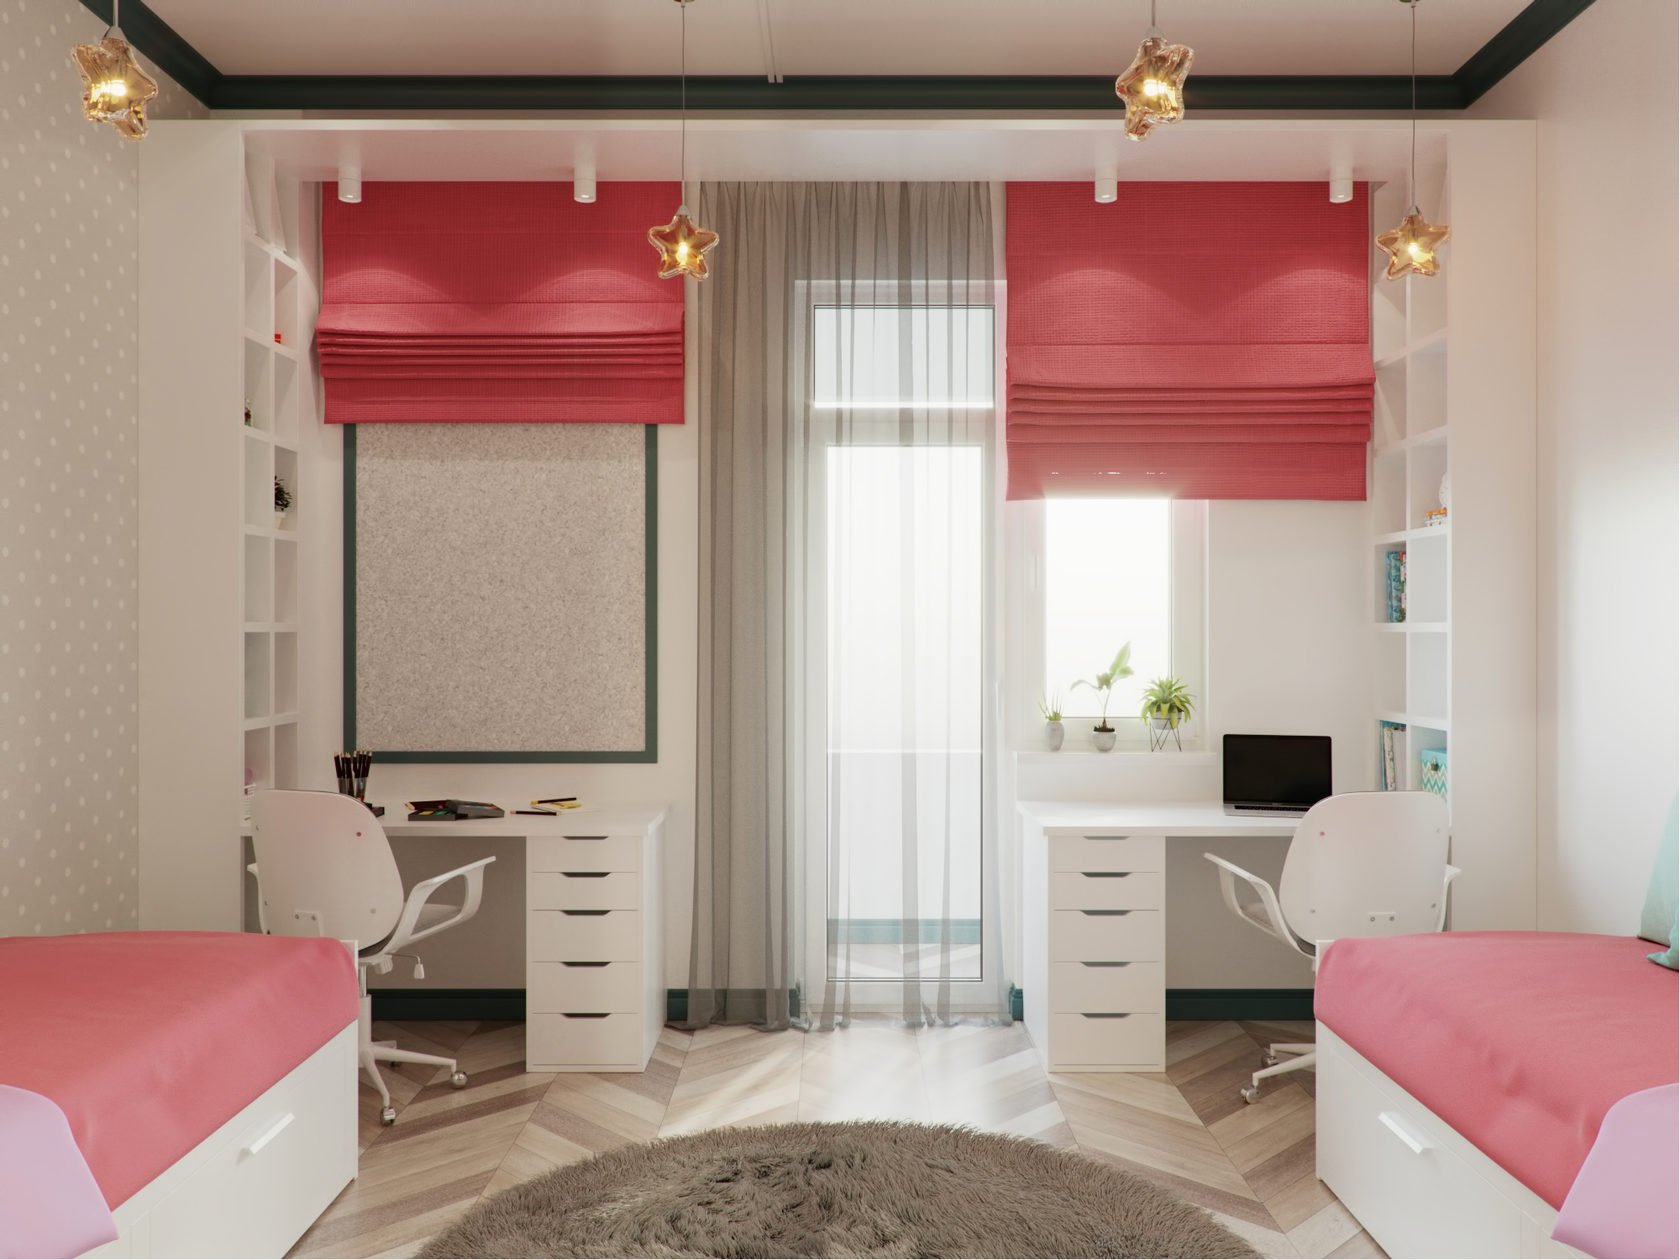 (+87 фото) дизайн детской комнаты для двух девочек